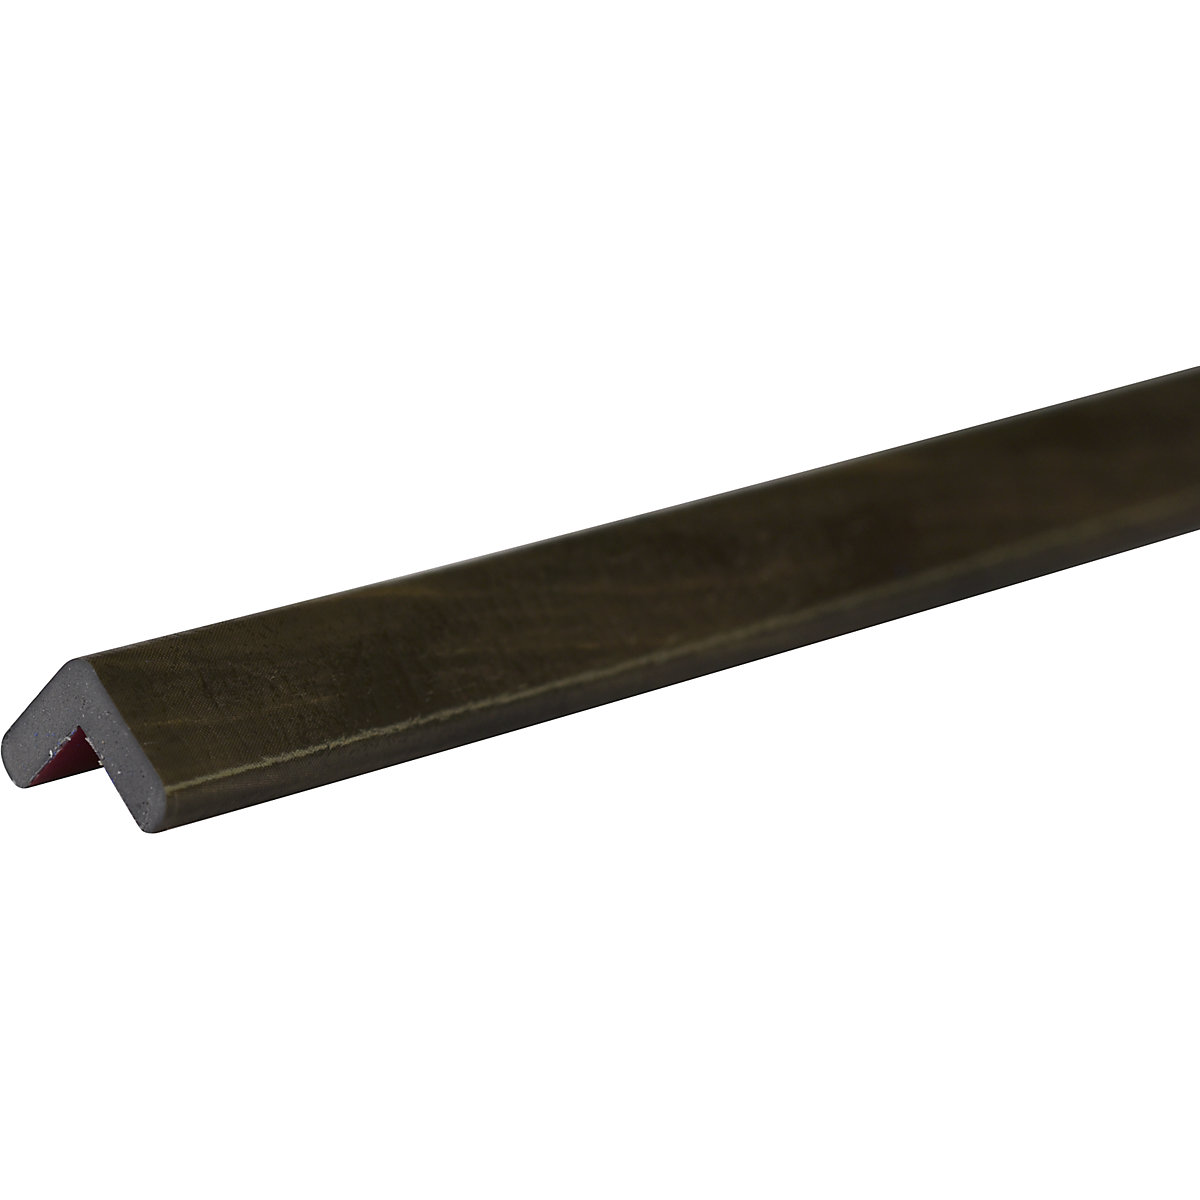 Ochrana rohů Knuffi® – SHG, typ E, kus 1 m, dřevěný dekor tmavý-23